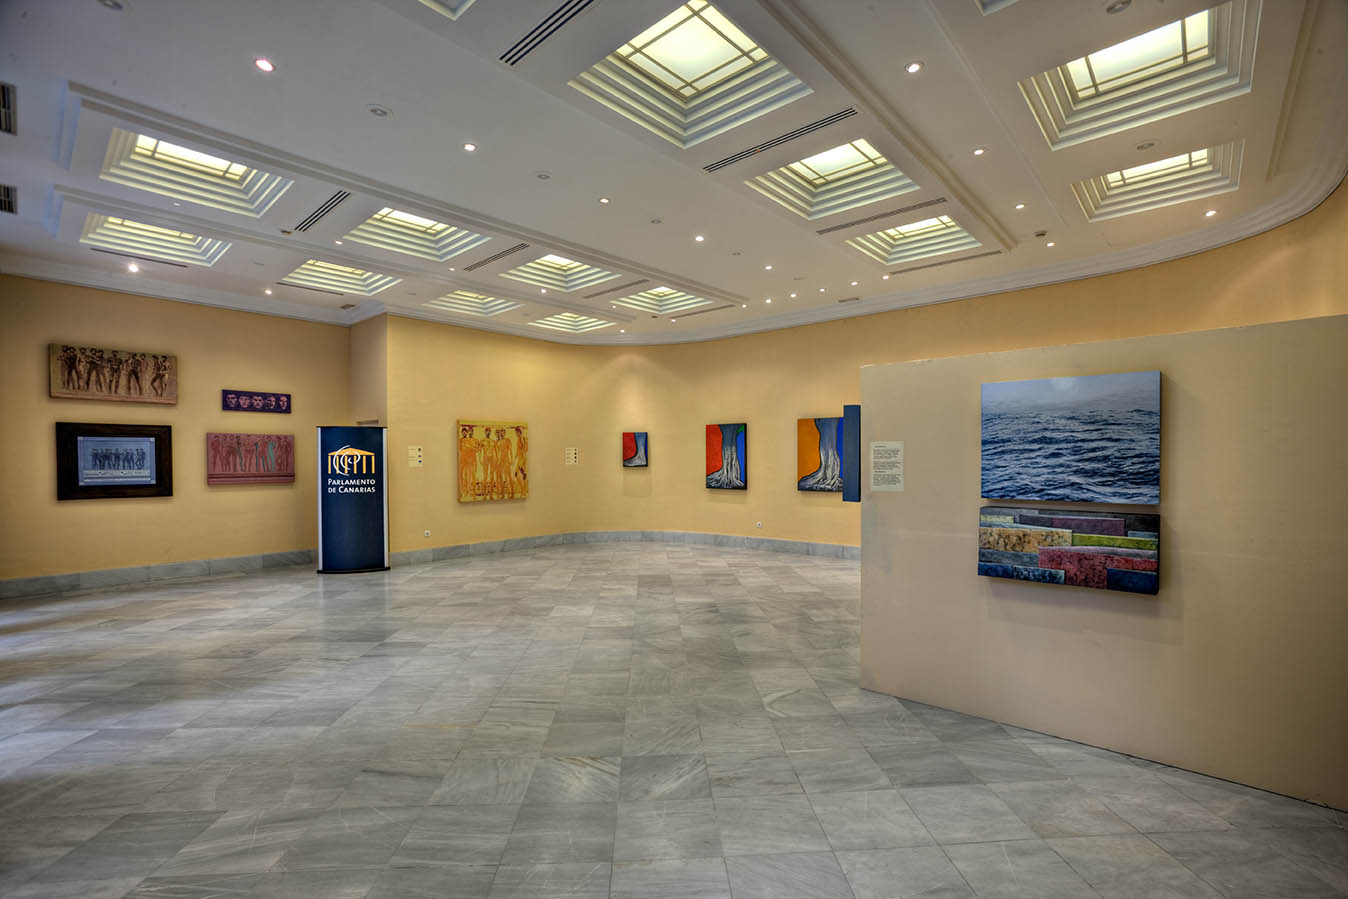 Inauguración de la exposición "Dos miradas", organizada por el Círculo de Bellas Artes de Tenerife